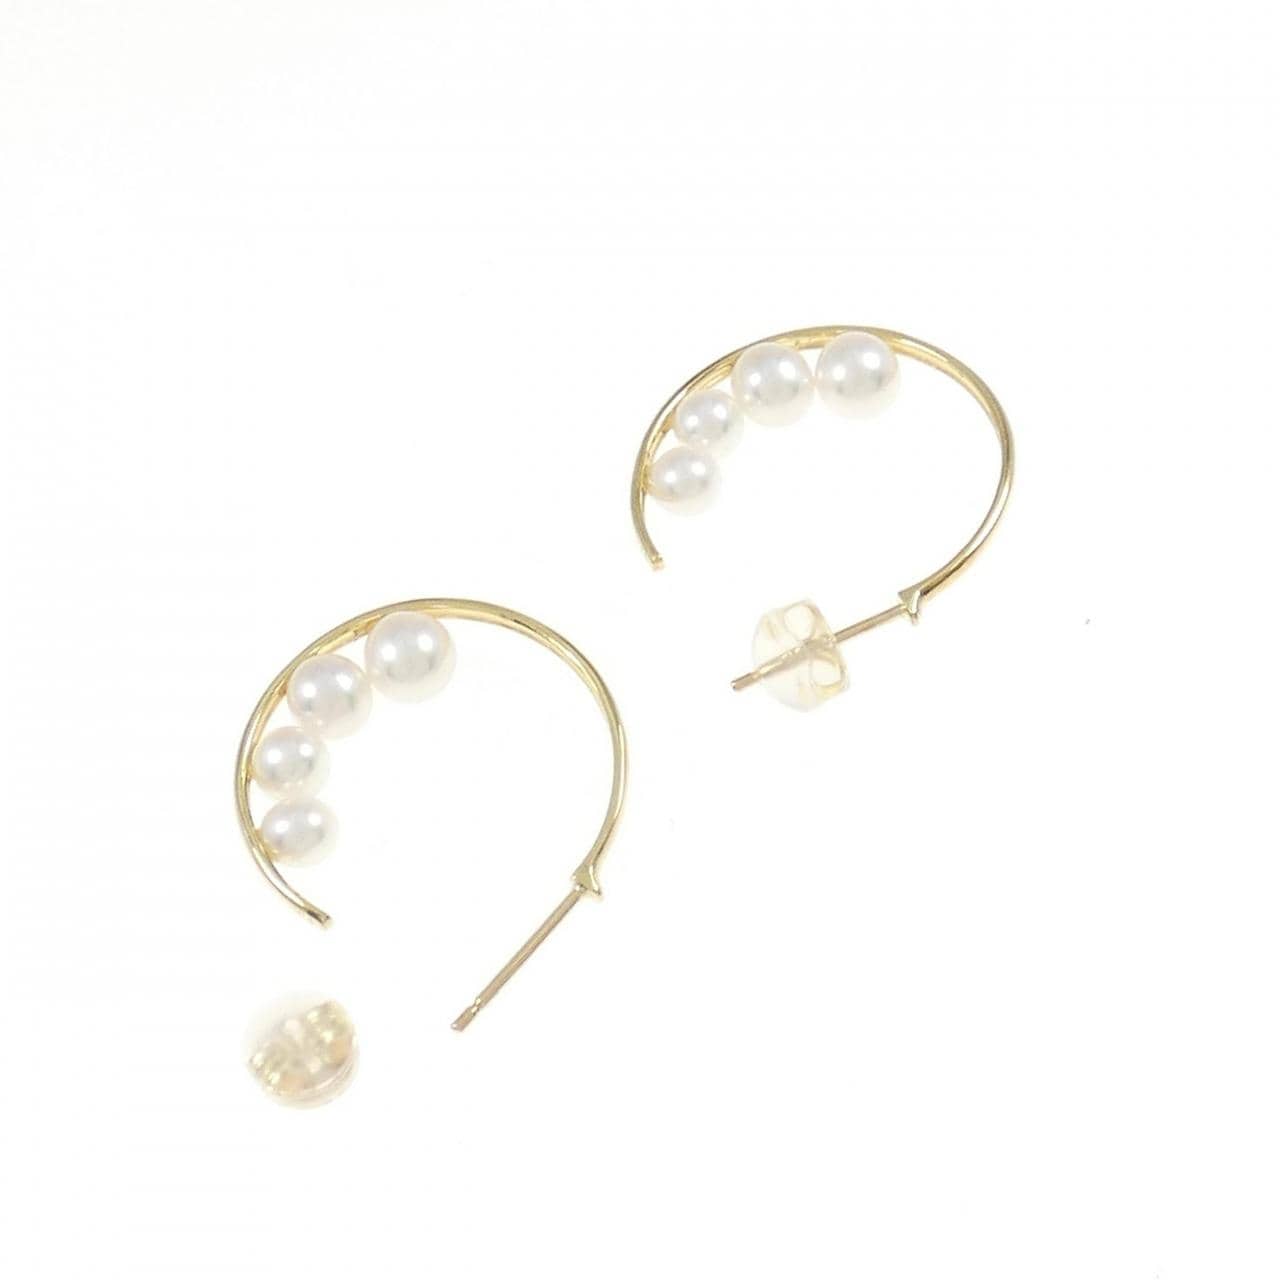 K18YG Akoya pearl earrings